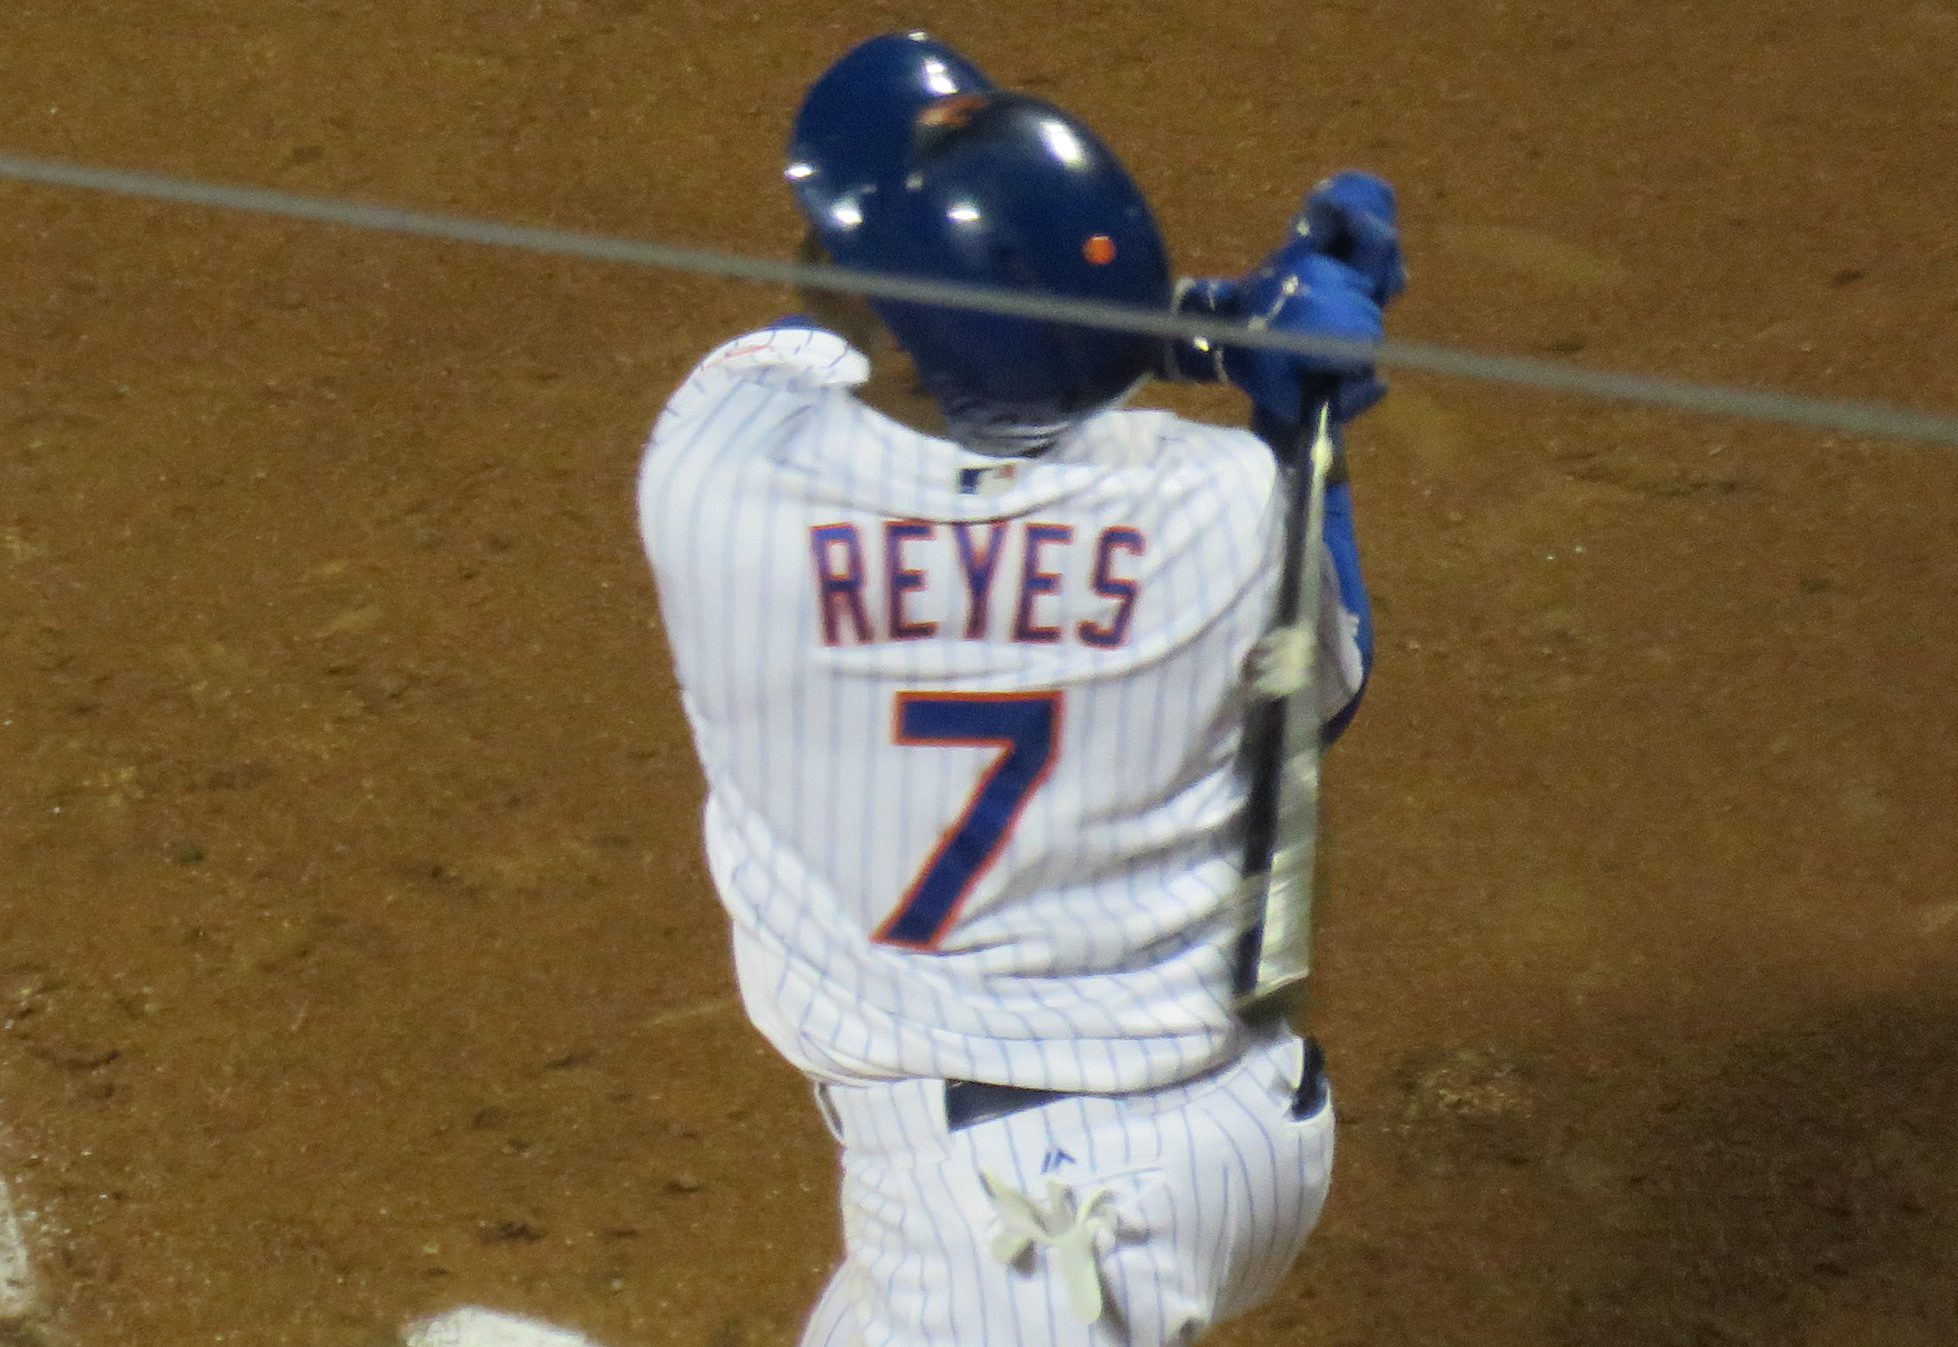 Jose Reyes